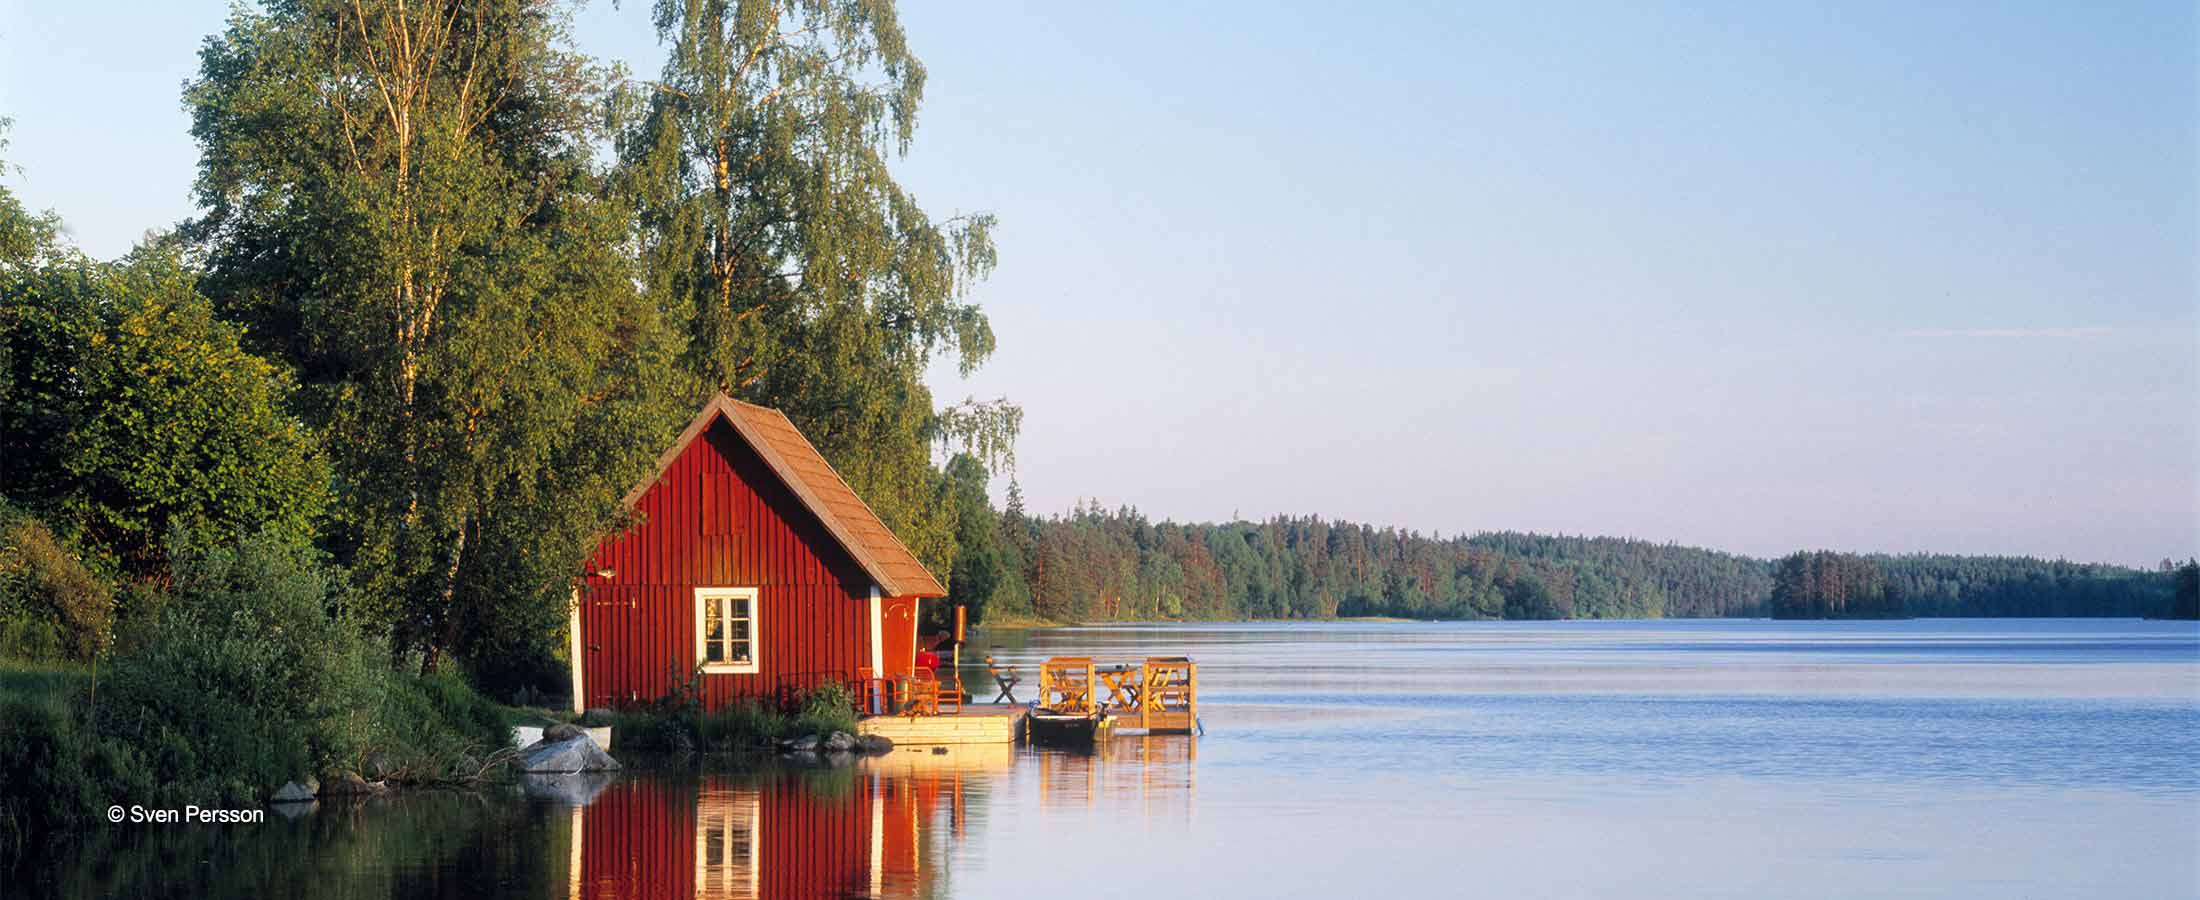 Holzhaus am Wasser in Skåne in Schweden